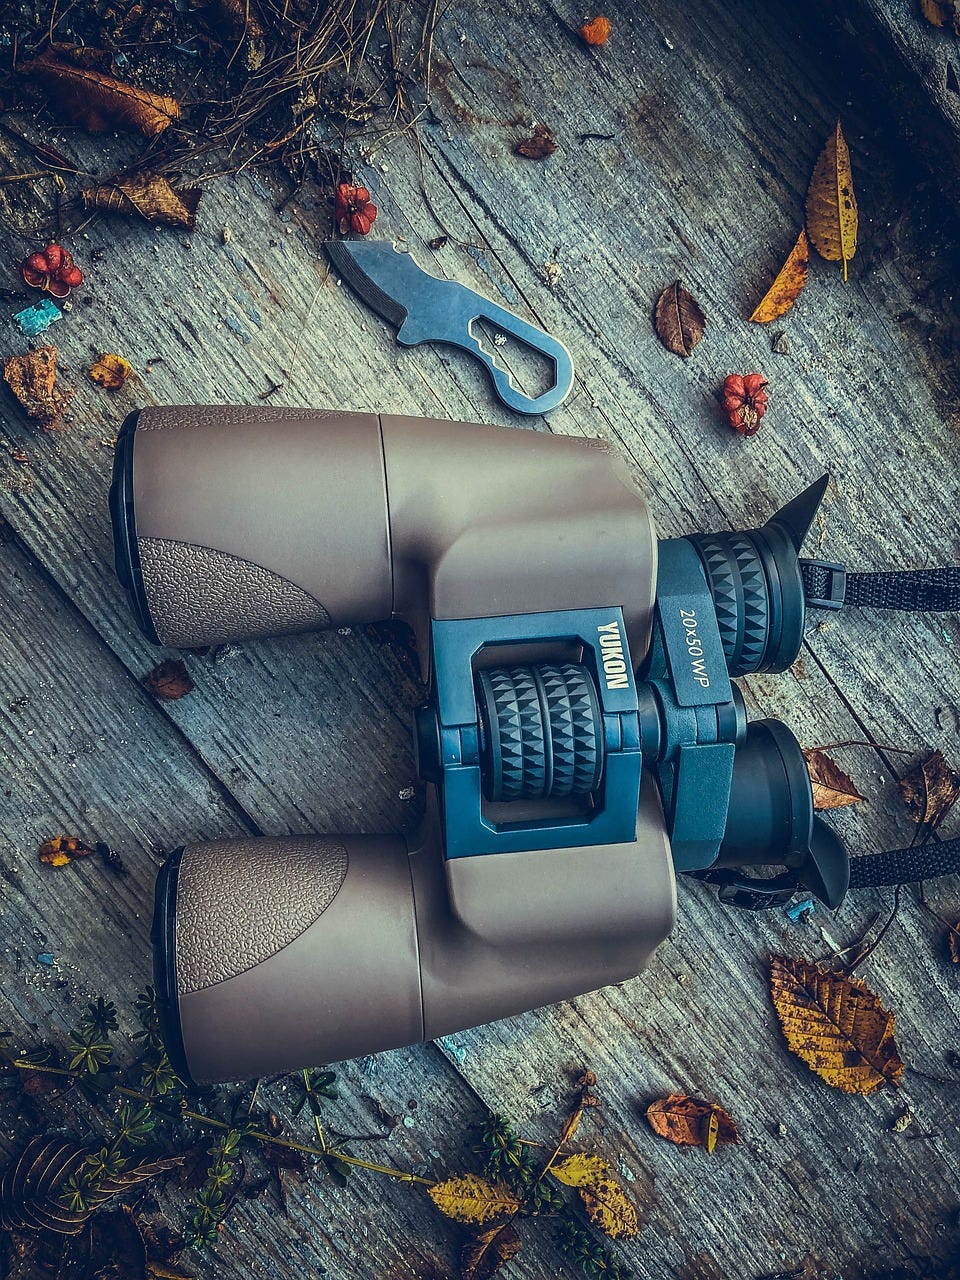 The Ultimate Guide to Choosing Binoculars